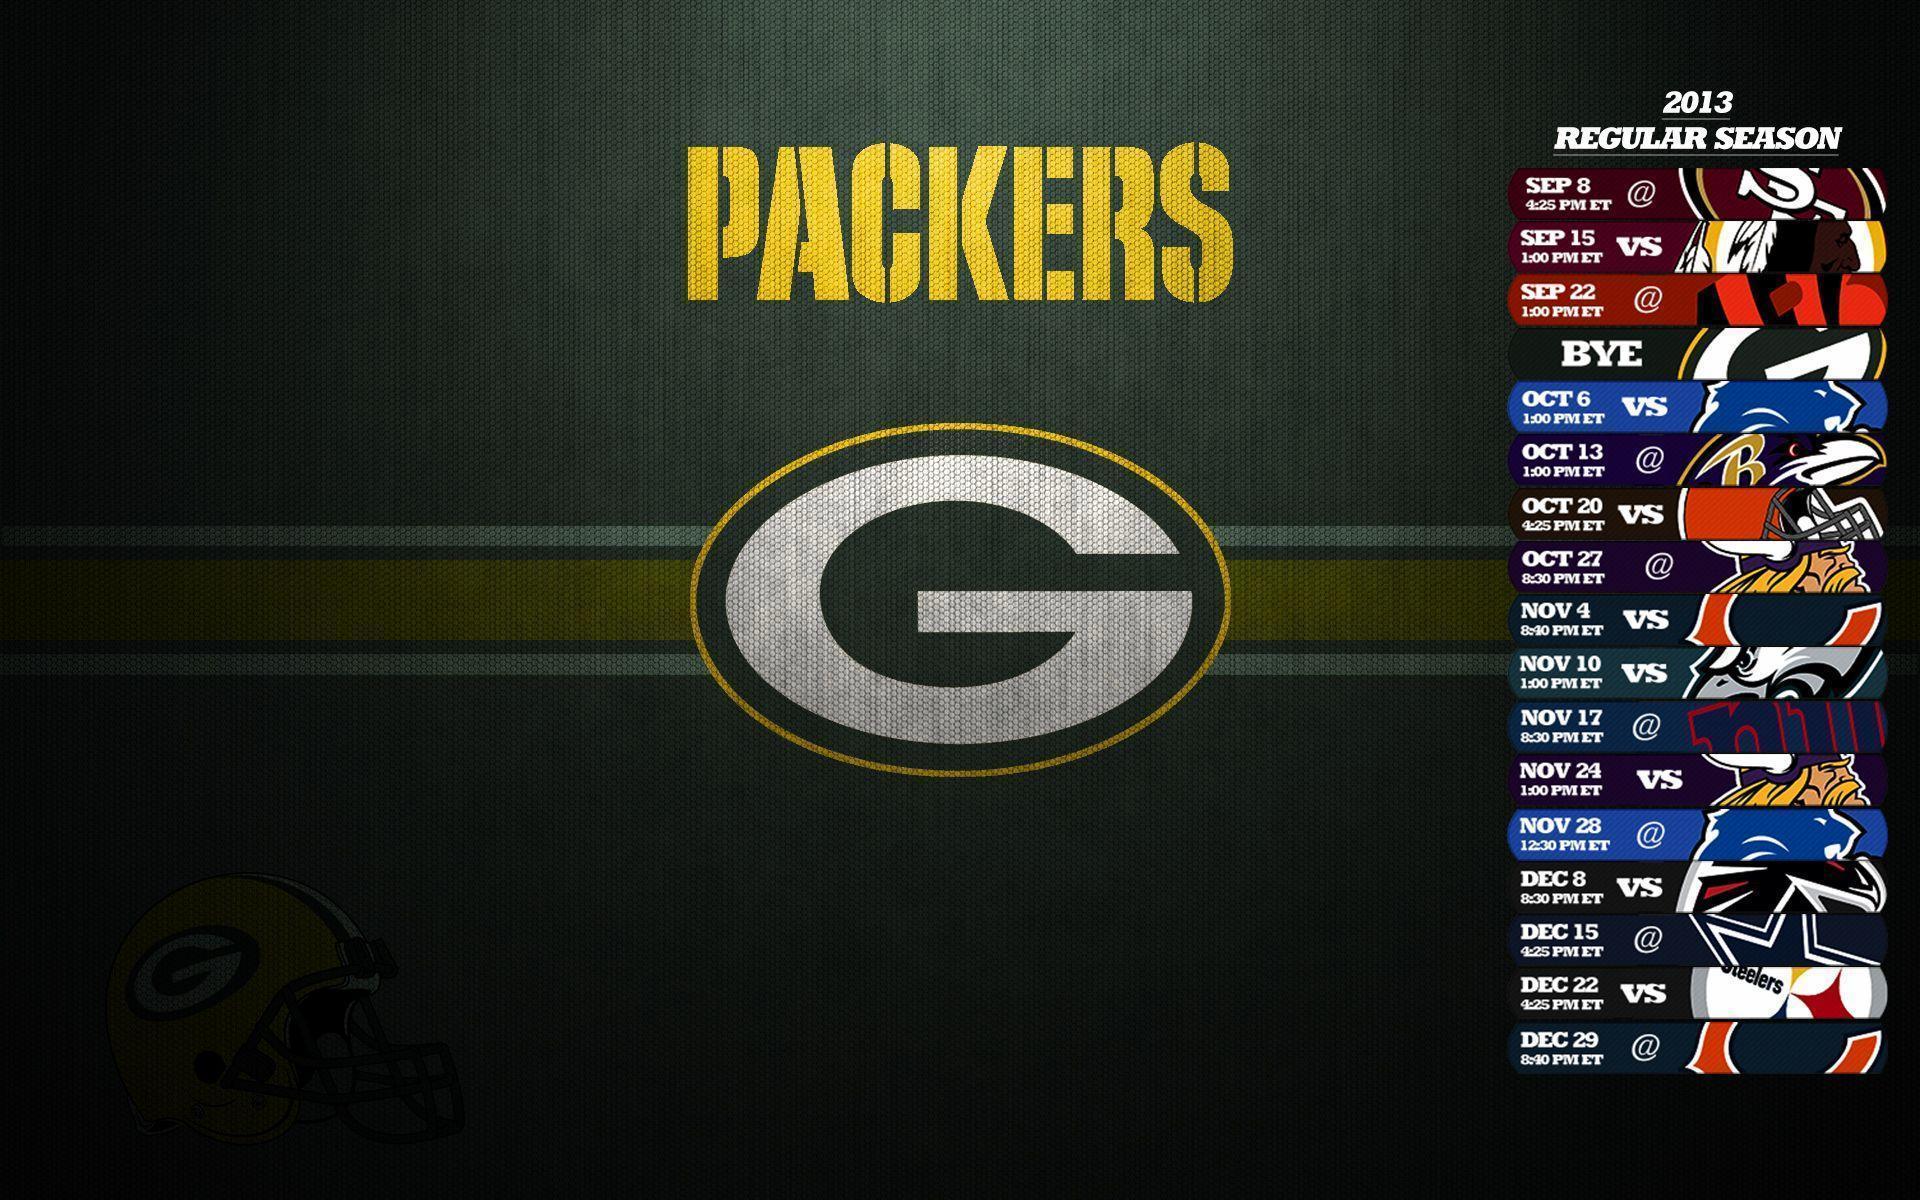 Packers 2015 Schedule Wallpaper